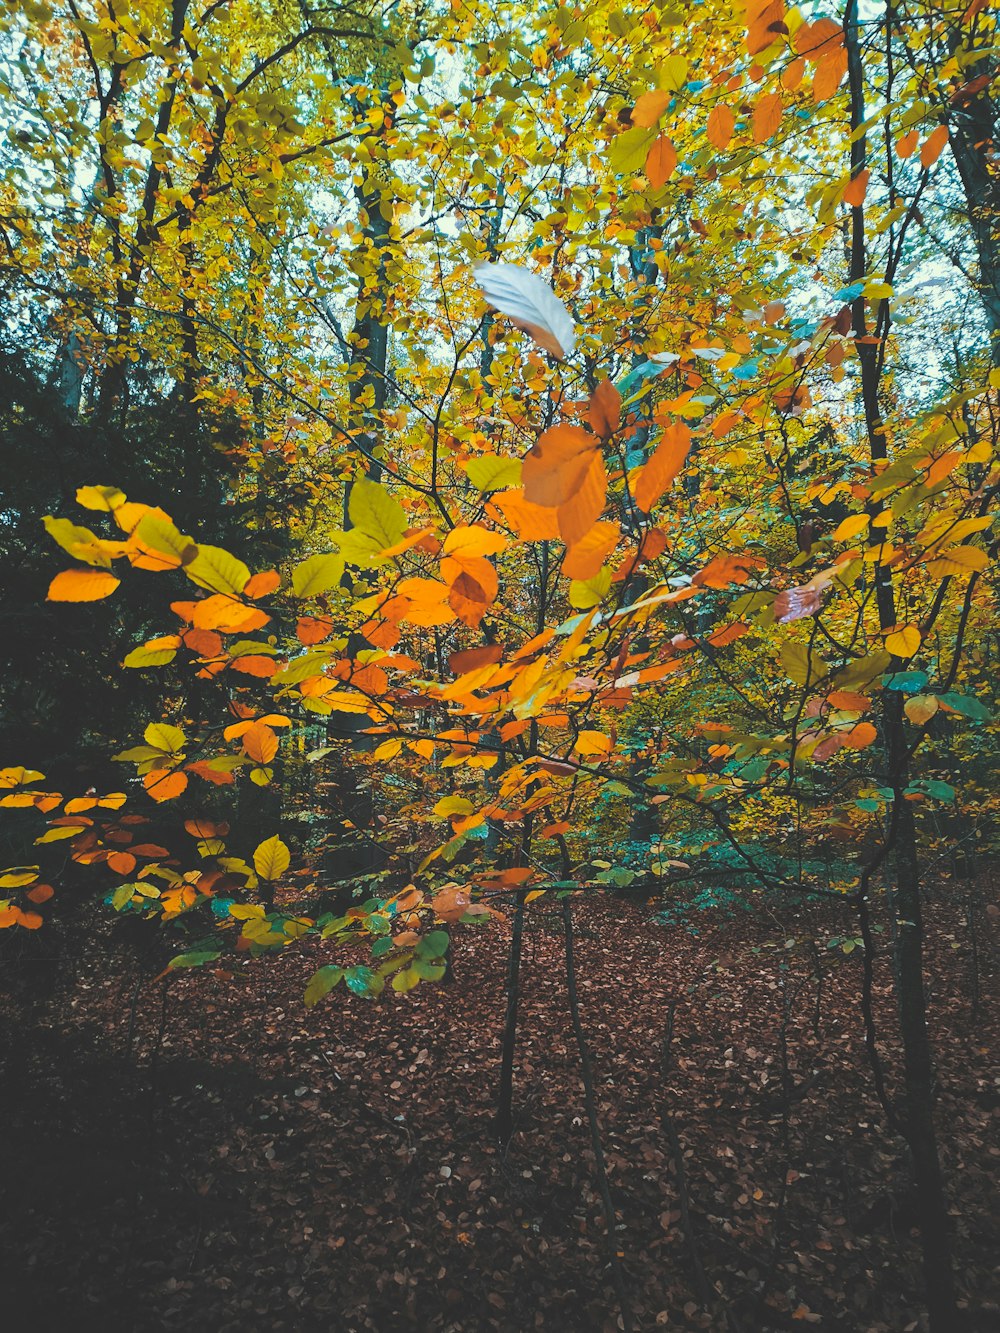 Una foresta piena di molti alberi coperti di foglie